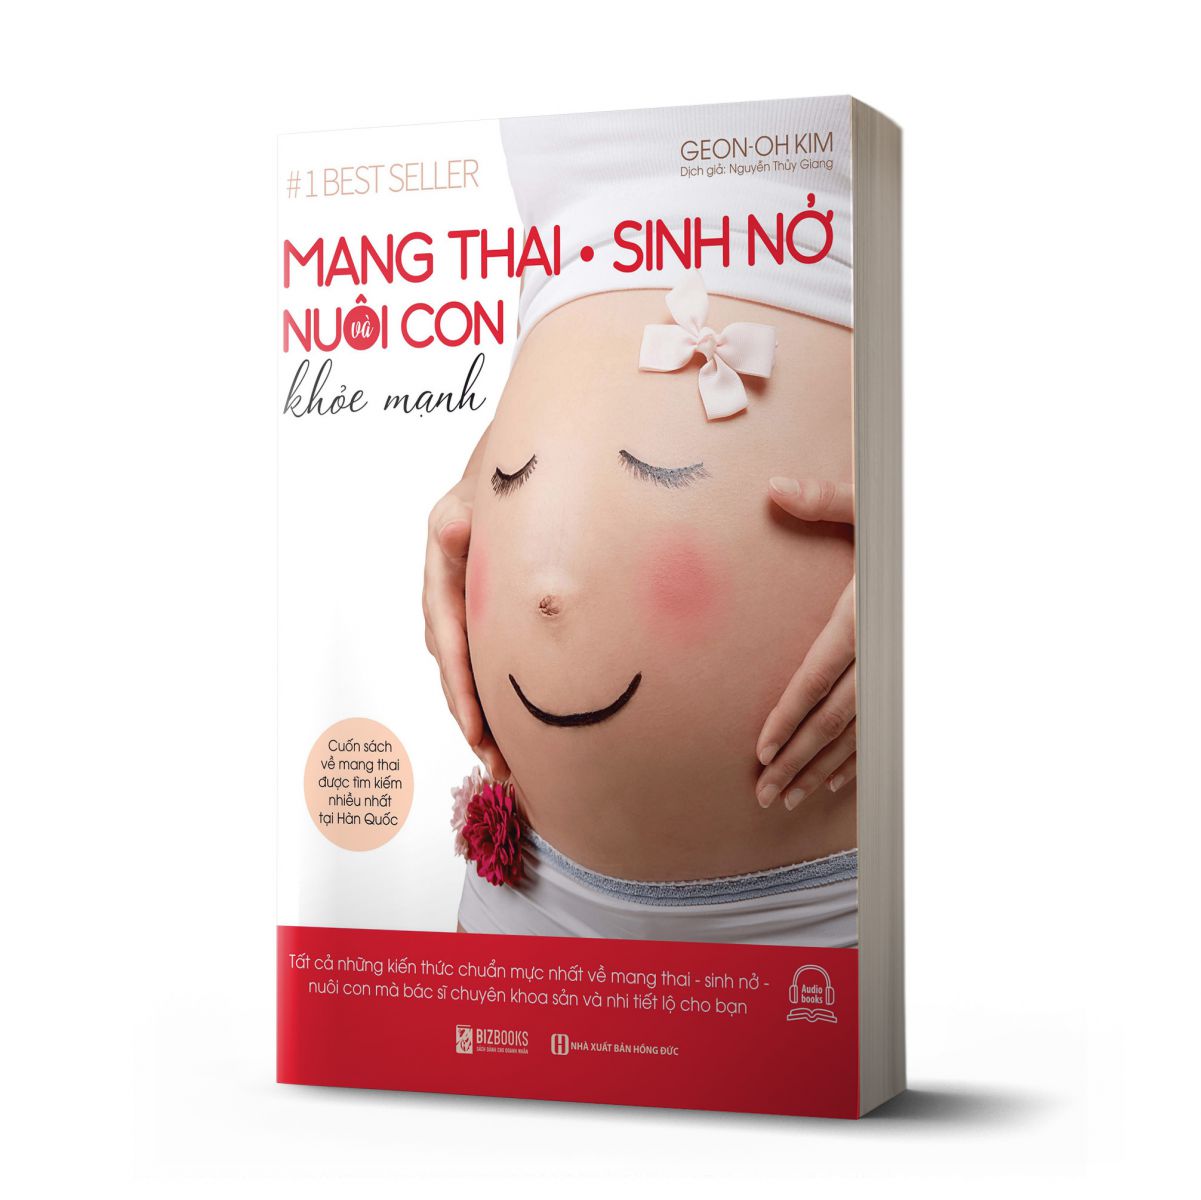 Mang Thai Sinh Nở Và Nuôi Con Khỏe Mạnh: Cuốn sách về mang thai được tìm kiếm nhiều nhất tại Hàn Quốc 1